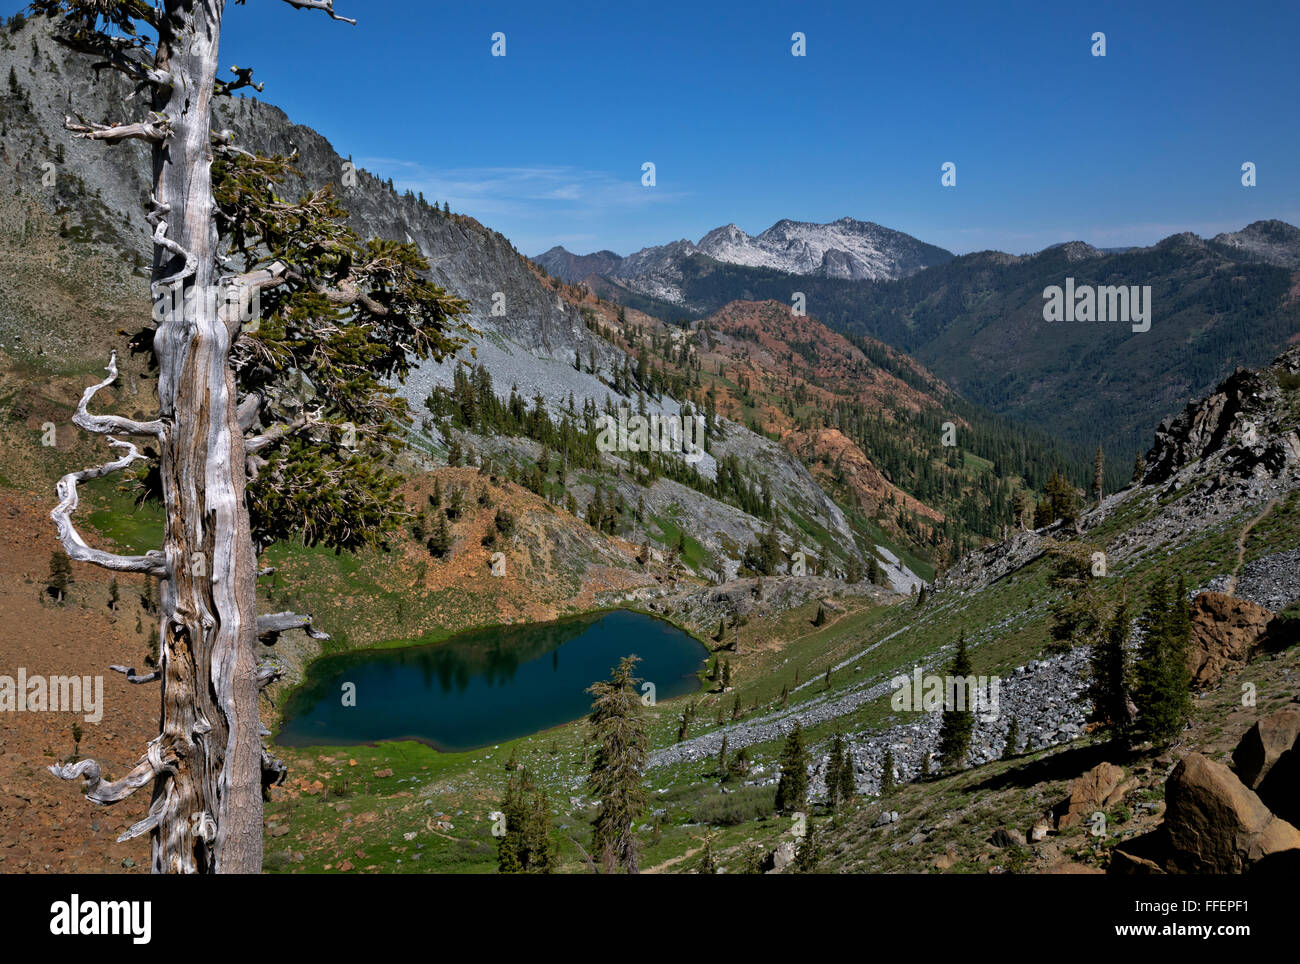 CA02822-00...CALIFORNIE - Deer Lake sur les quatre lacs en boucle Alpes Trinity Désert de la Forêt Nationale de Shasta-Trinity. Banque D'Images